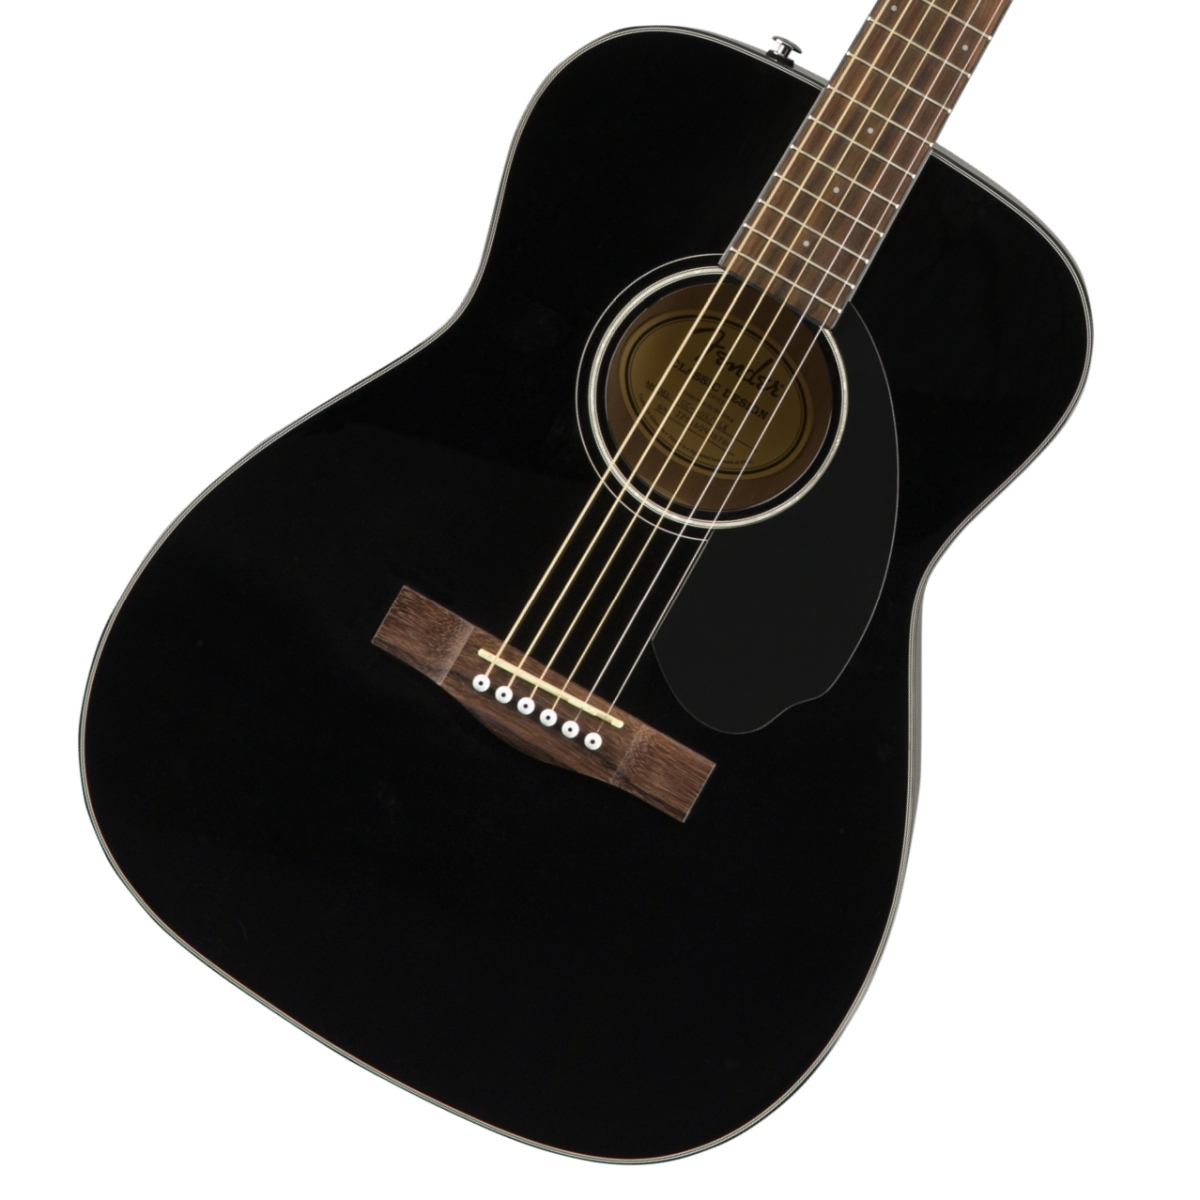 Fender / CC-60S Concert Walnut Fingerboard Black フェンダー アコギ フォークギター 【数量限定大特価】